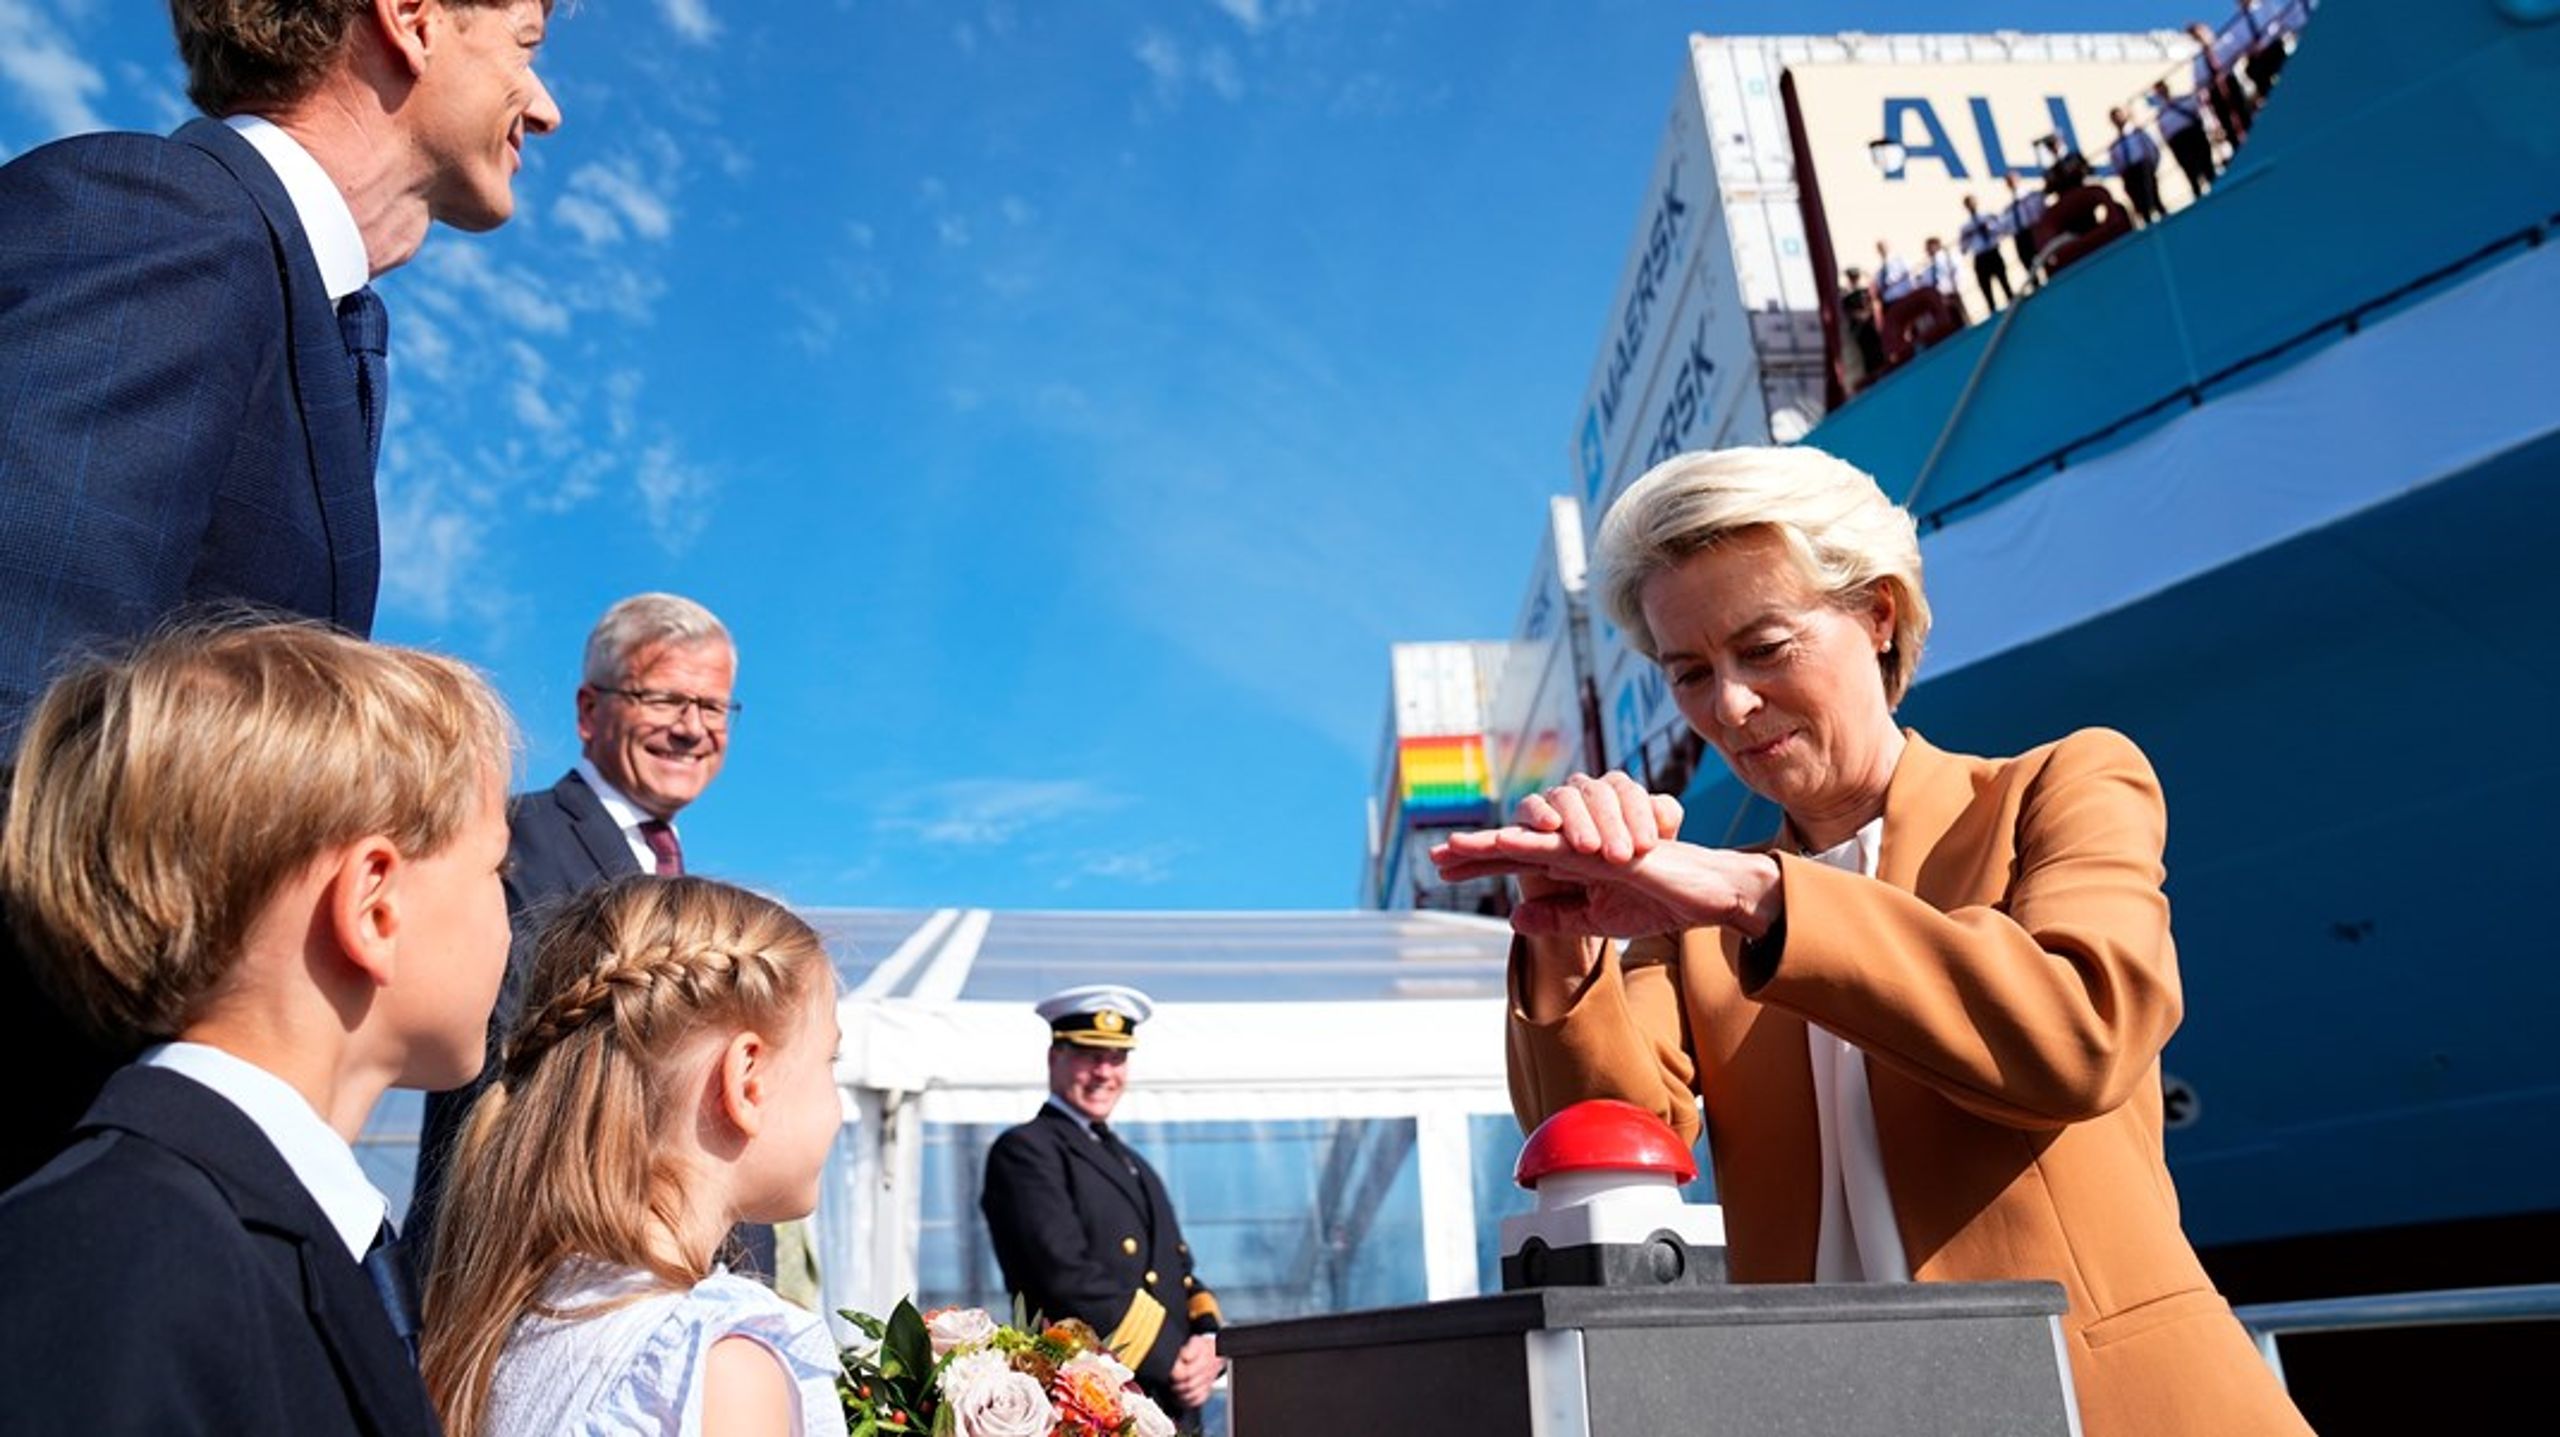 Vi kan være stolte af, at de danske rederier går forrest.
Det så vi blandt andet tydeligt demonstreret, da Kommissionspræsident Ursula von der Leyen var i København for at navngive skibet Laura Mærsk, skriver Anne H. Steffensen.